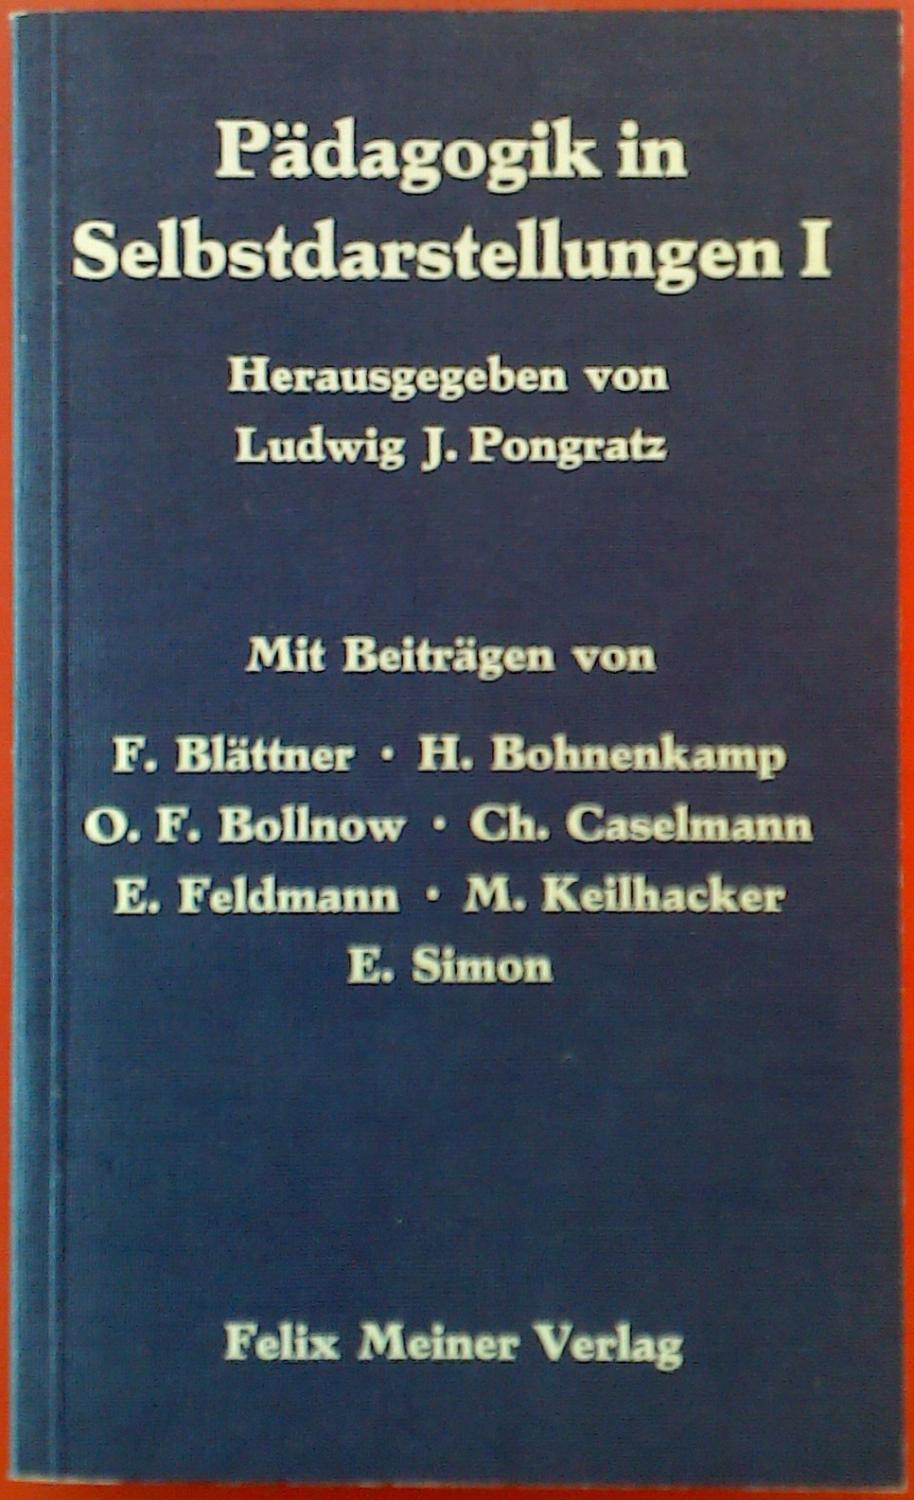 Pädagogik in Selbstdarstellungen I. - Mit Beiträgen von F. Blättner - H. Bohnenkamp - O. F. Bollnow u. a. - Hrsg. Ludwig J. Pongratz